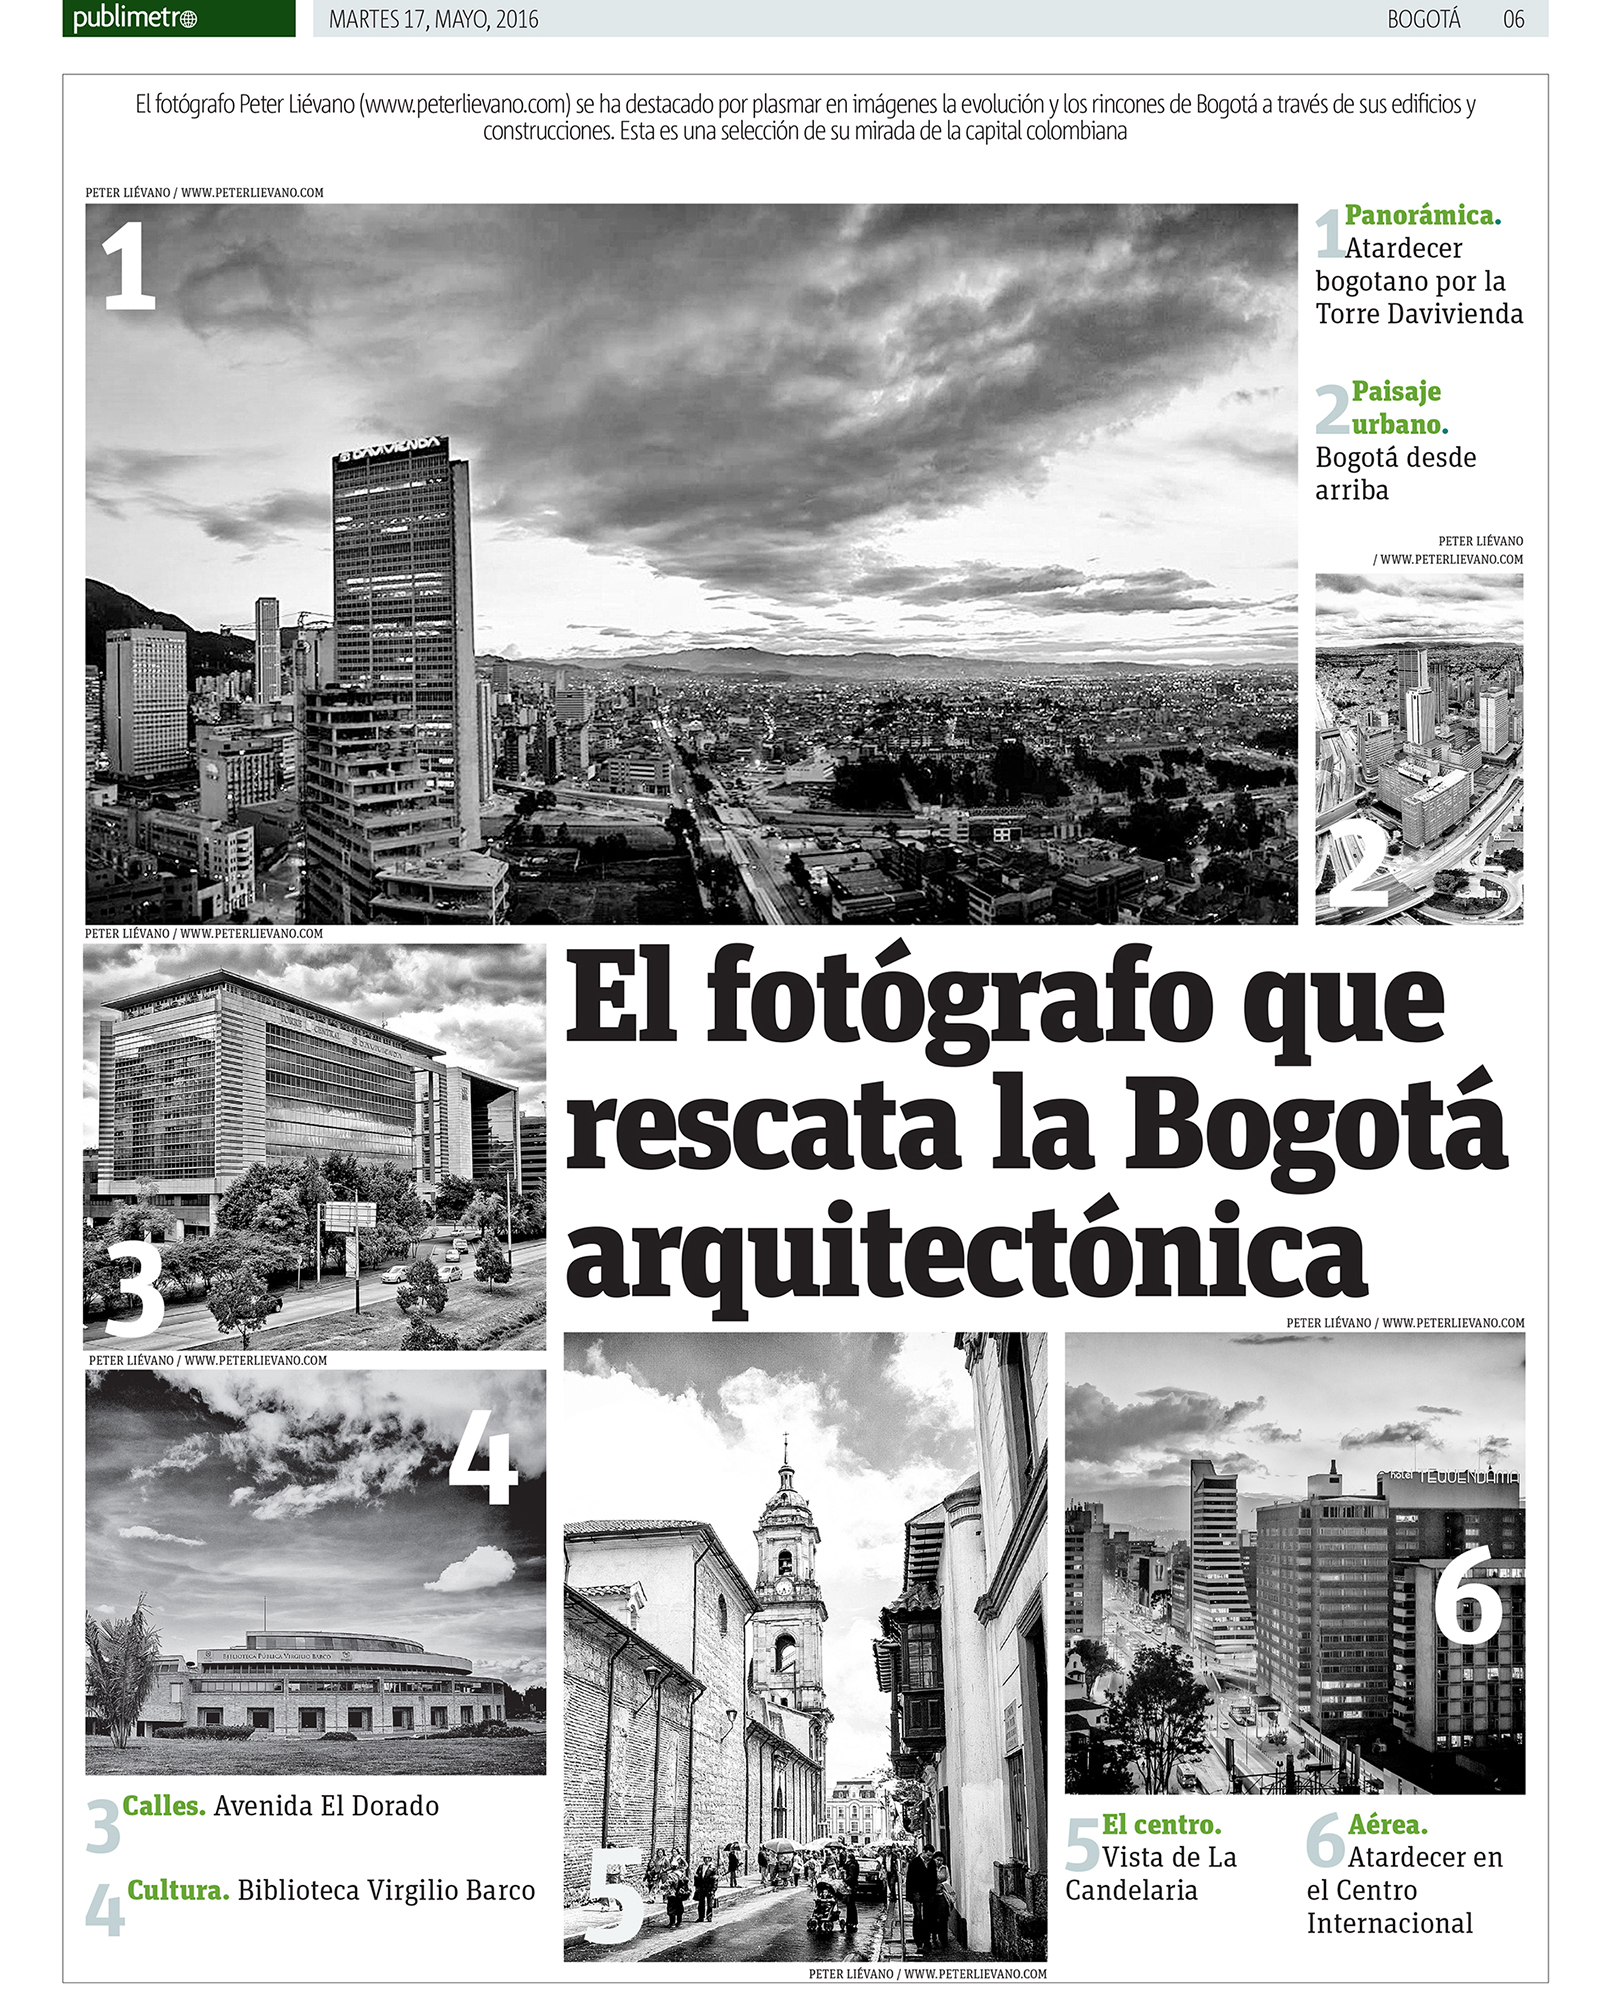 Publimetro // El fotógrafo que rescata la Bogotá arquitectónica